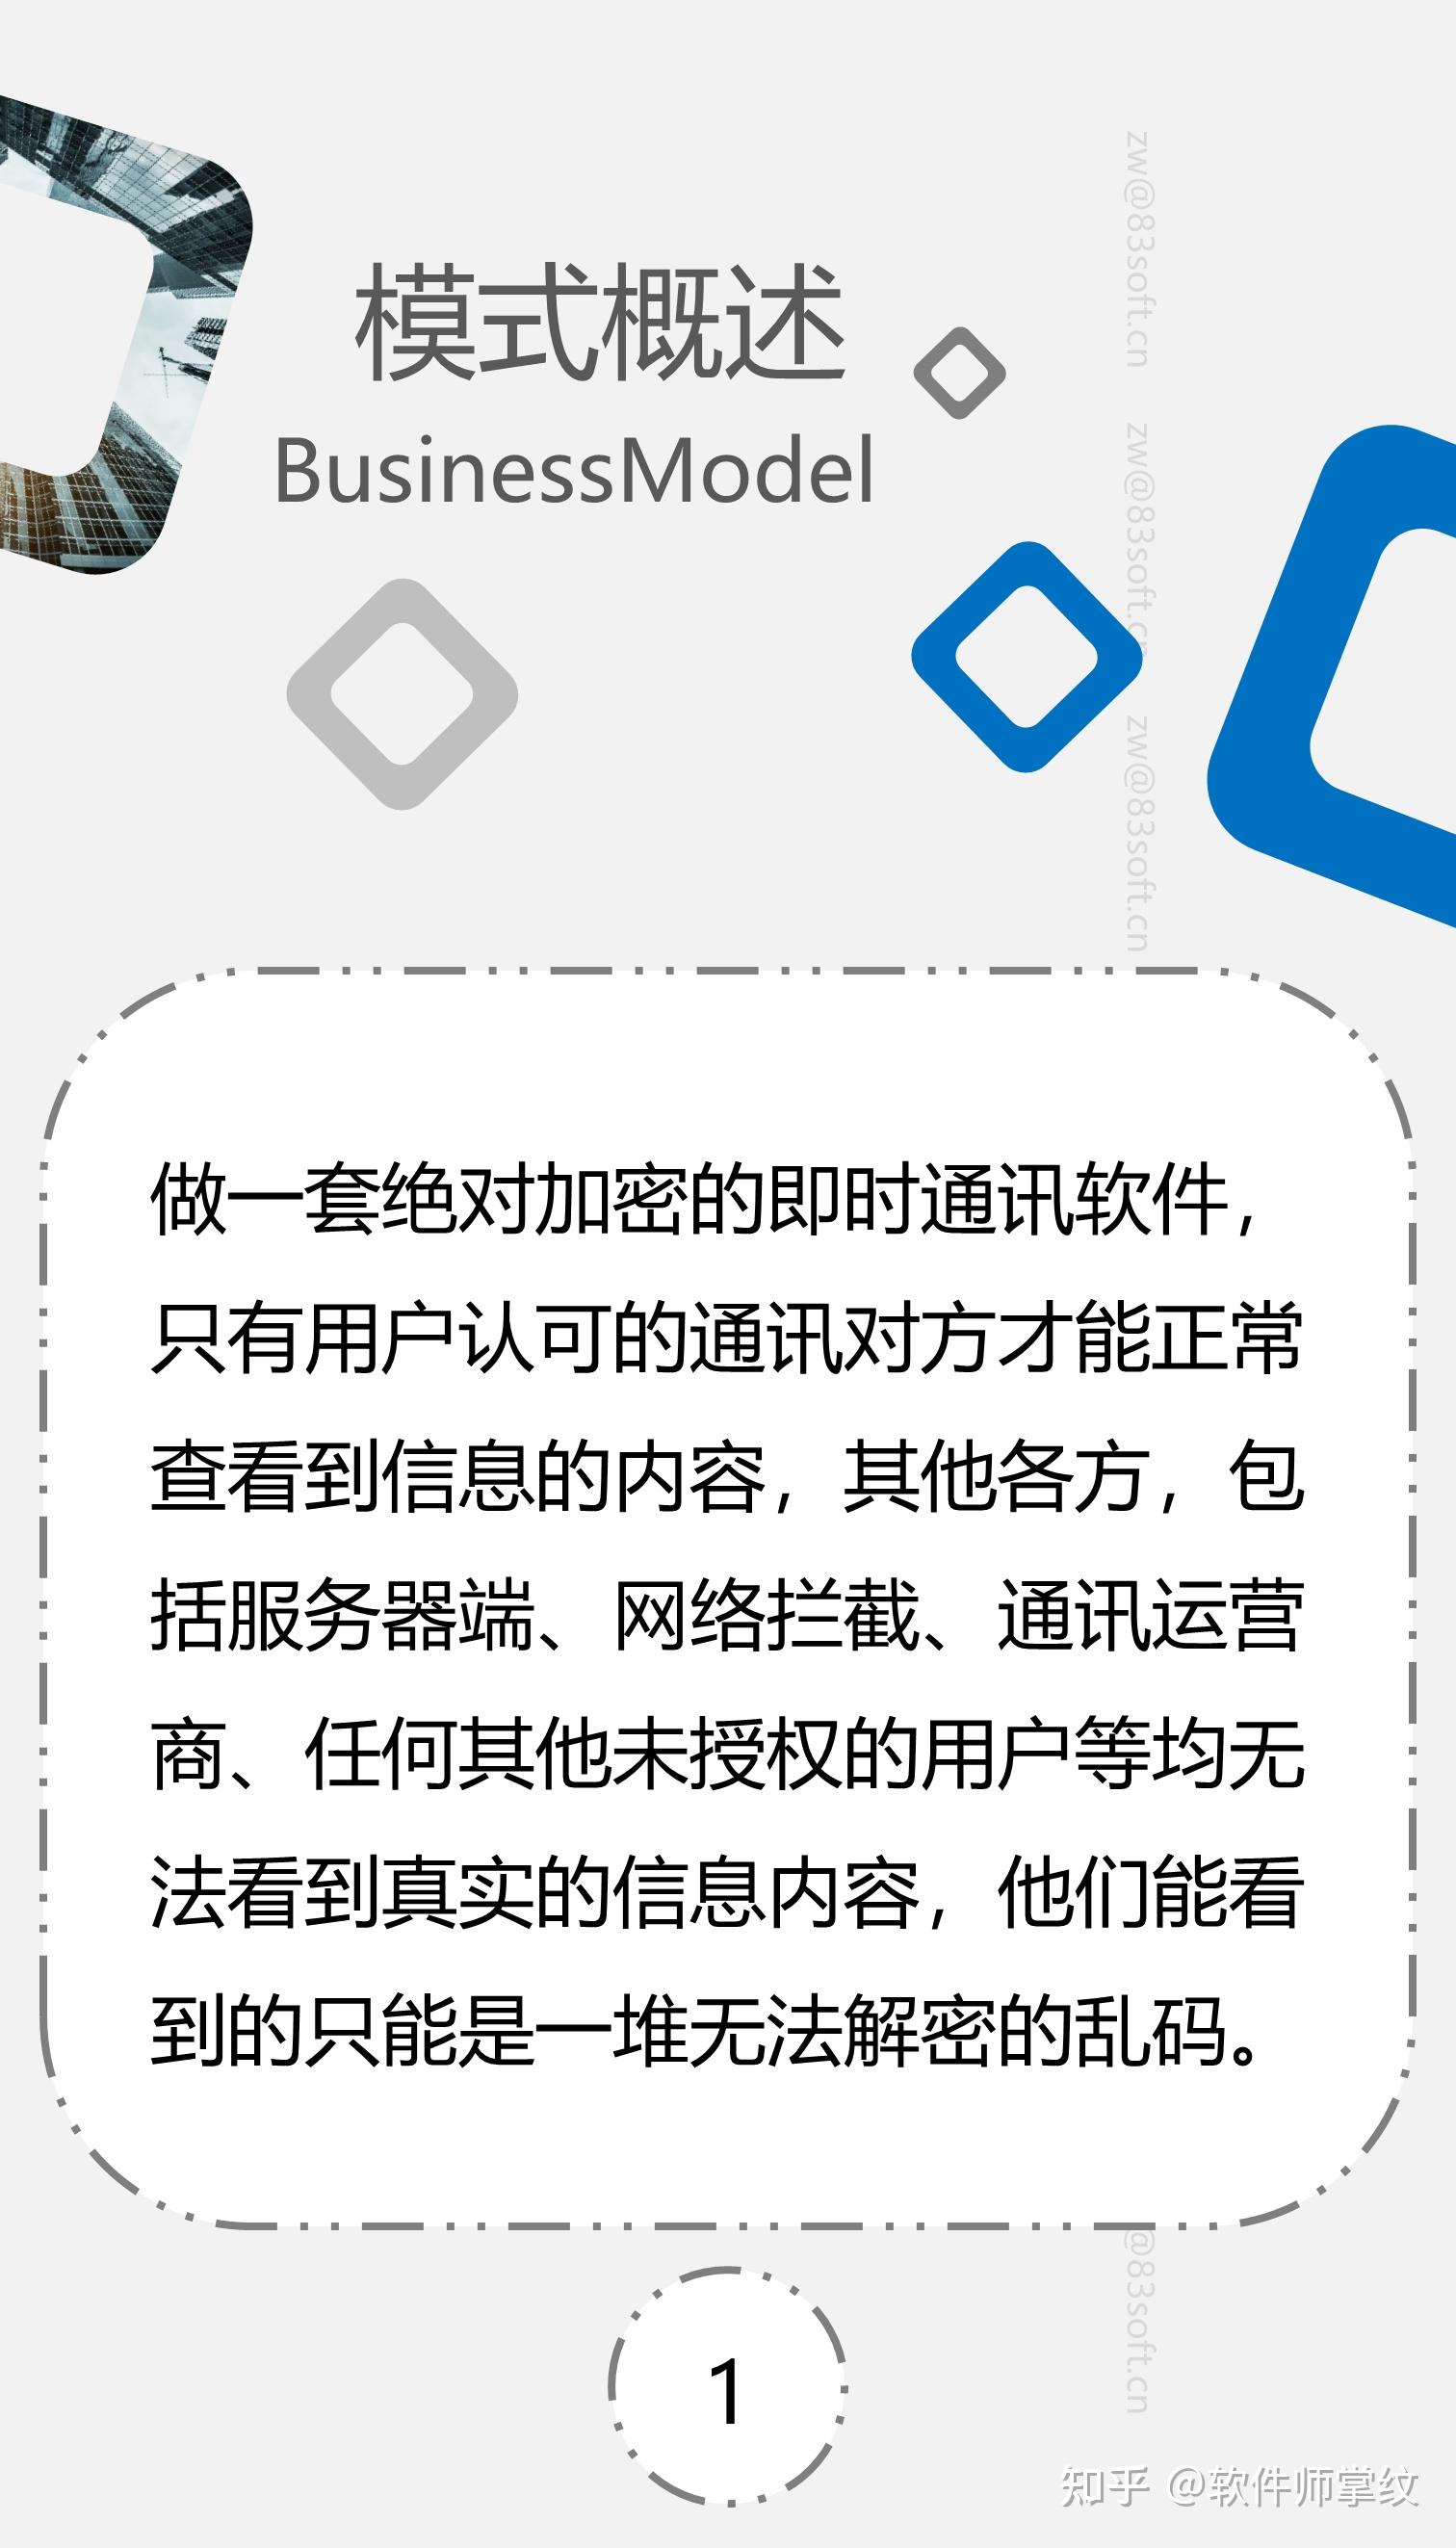 whatsapp中文手机版-全球最受欢迎的中文即时通讯应用正